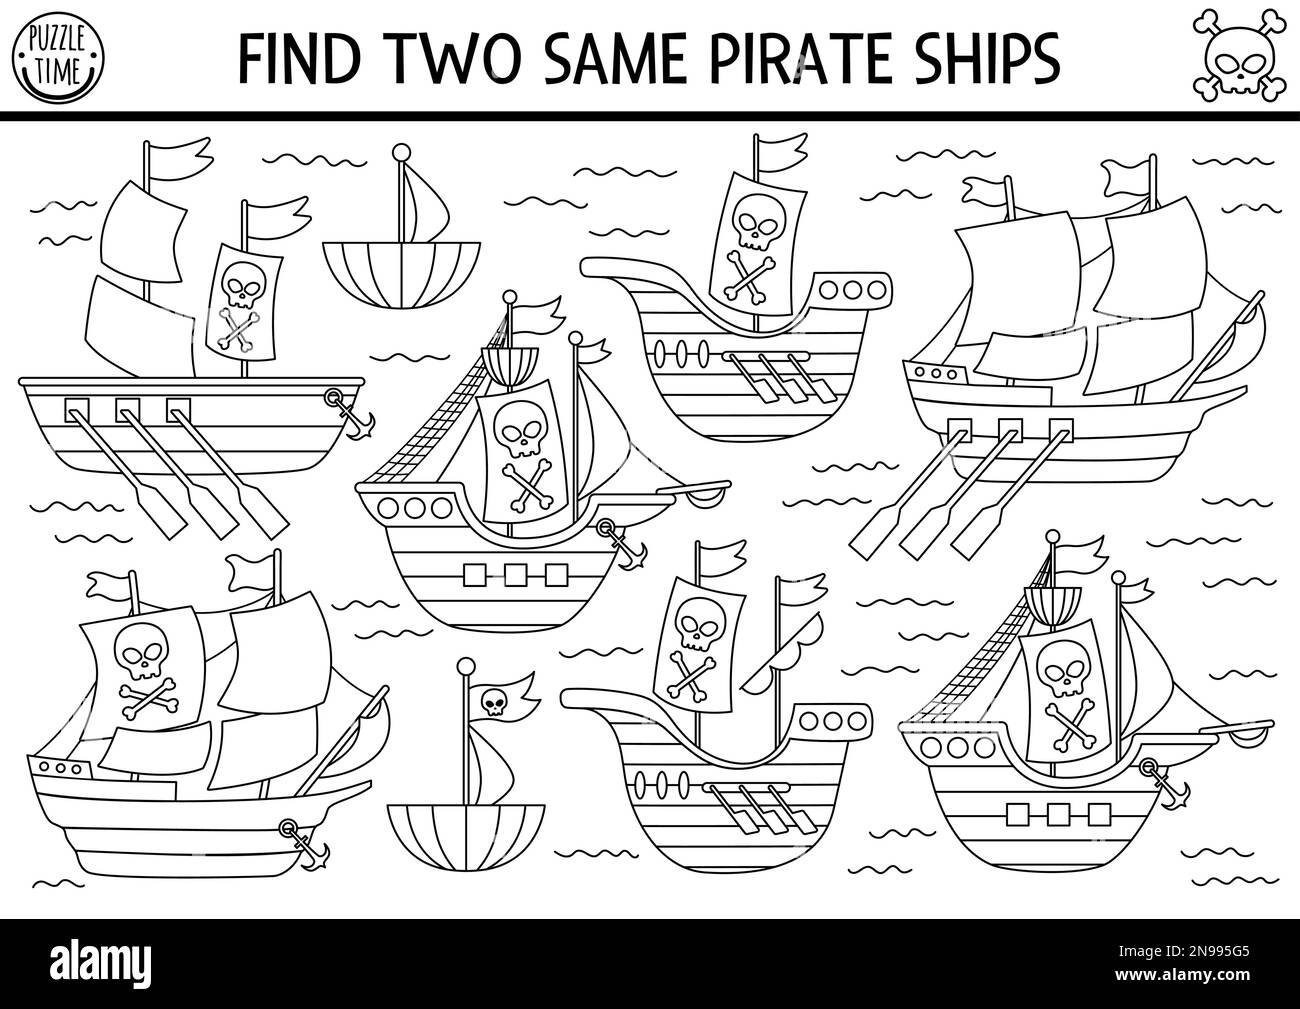 Noir et blanc trouver deux navires de pirate identiques. Activité d'appariement de lignes d'îlots de trésors pour les enfants. Fiche de travail ou coloriage du quiz éducatif Sea Adventures Illustration de Vecteur